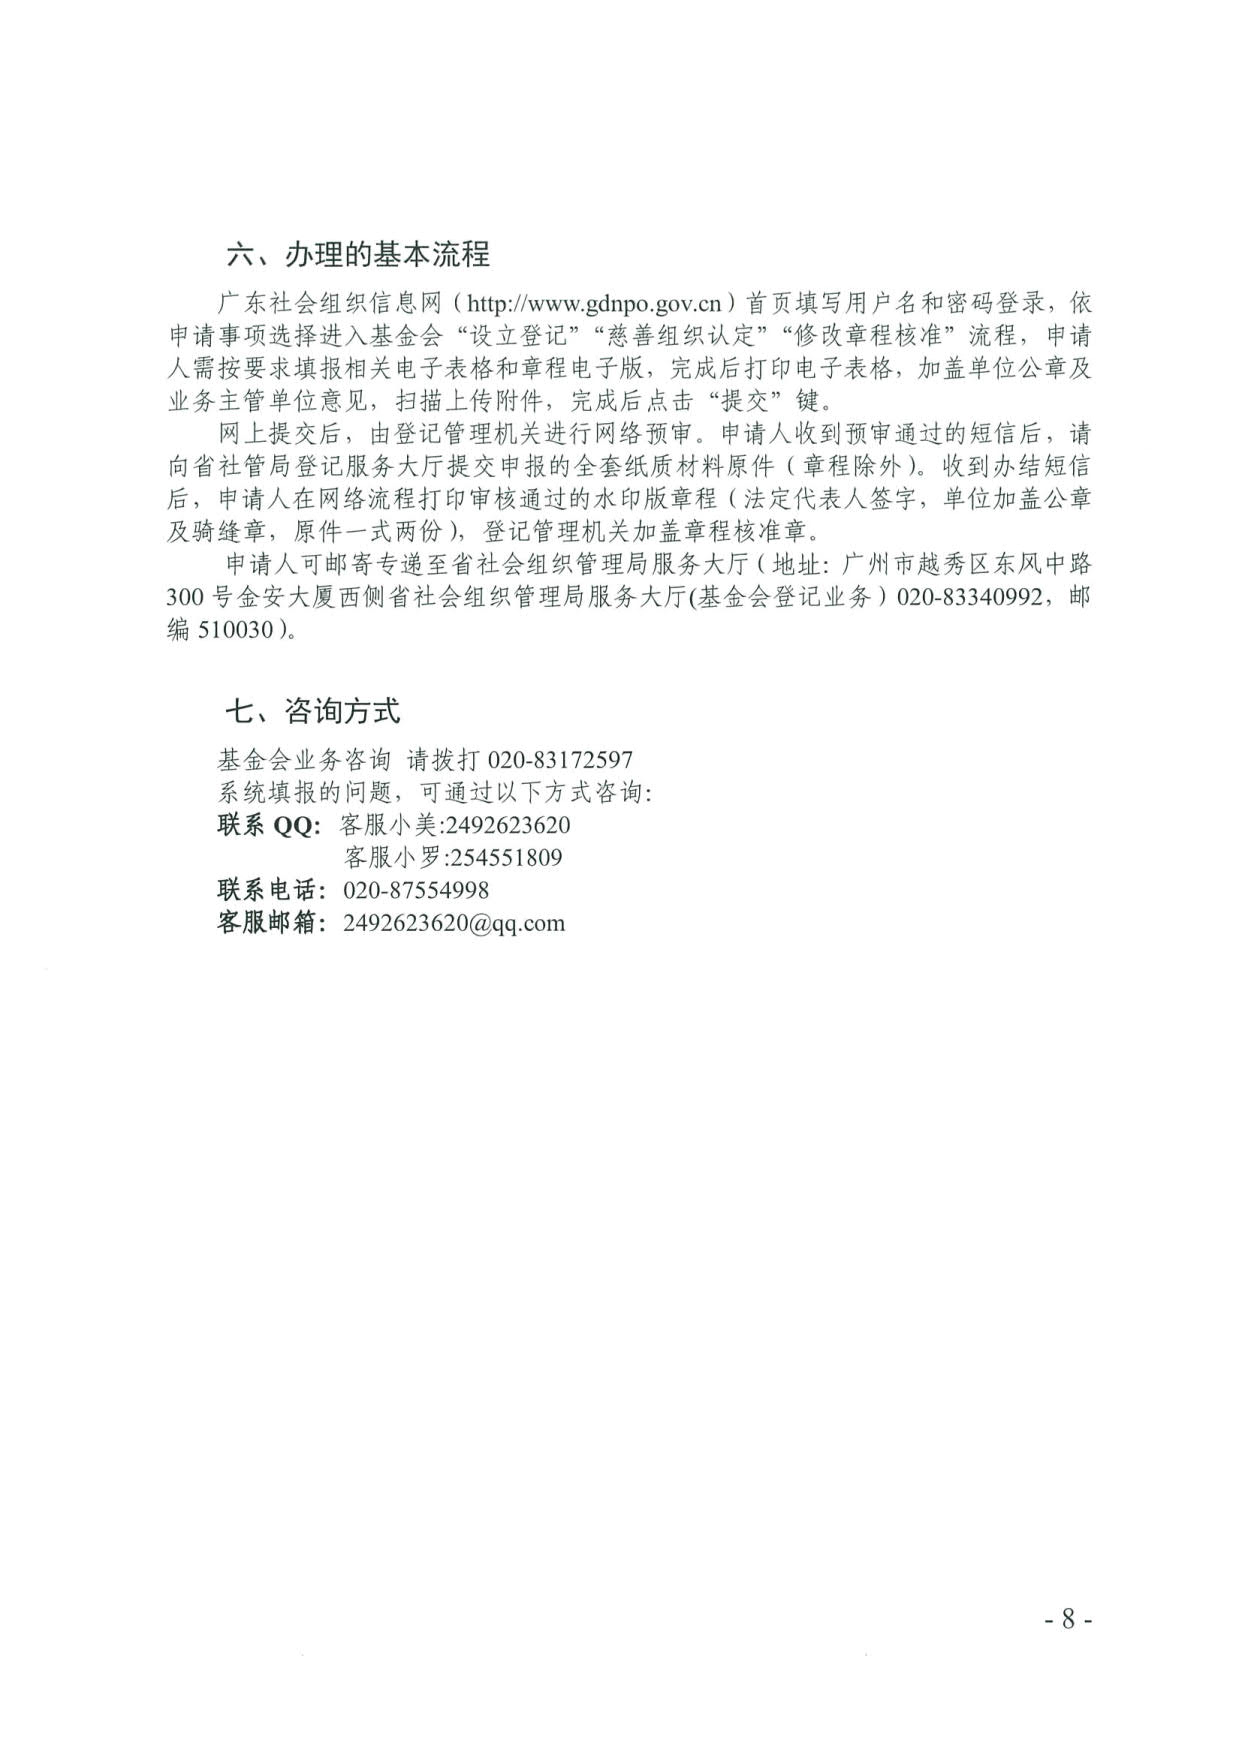 广东省社会组织管理局关于更新基金会章程核准等申报流程的通知(2)_8.jpg